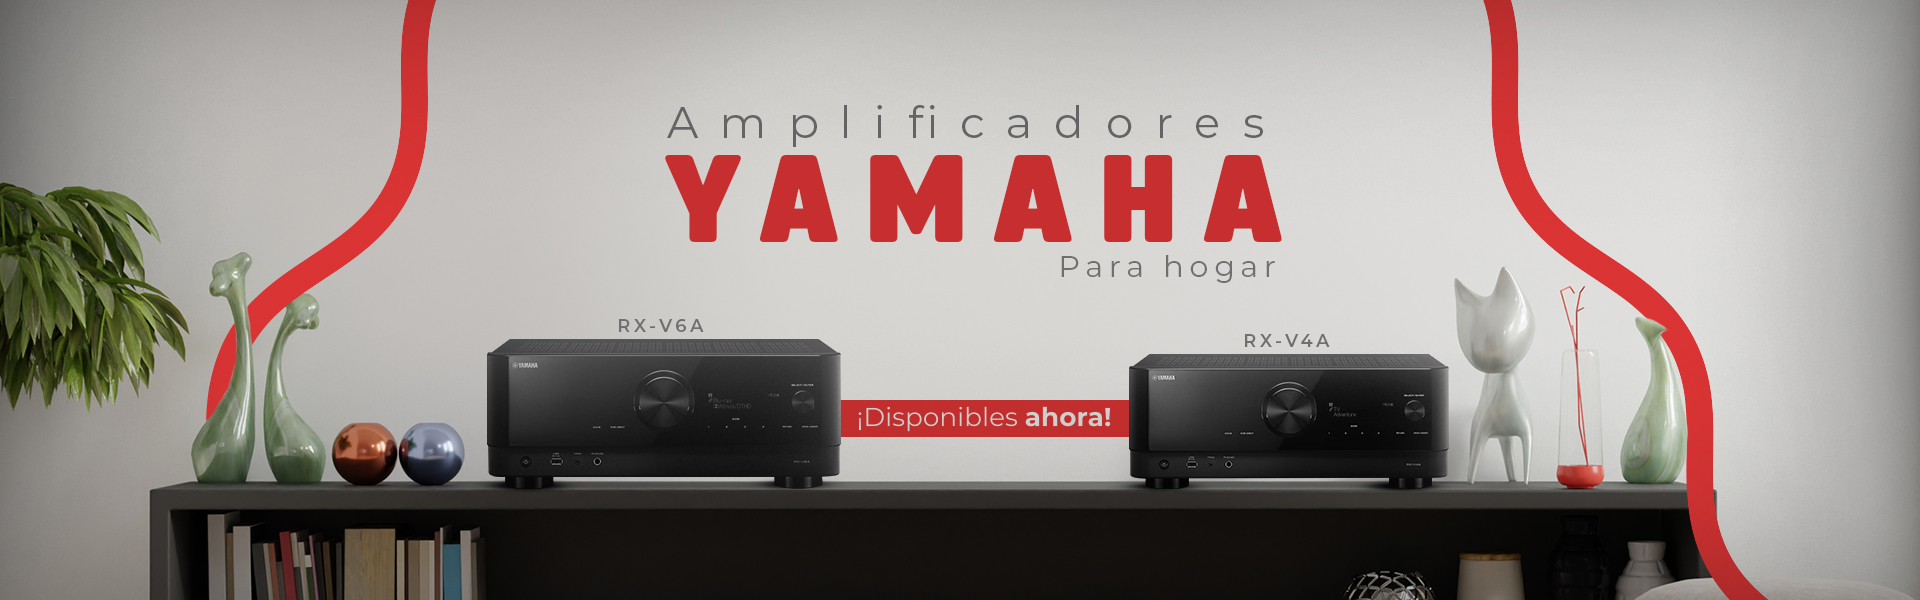 Hipercentro Electrónico amplificadores Yamaha Hi-Fi